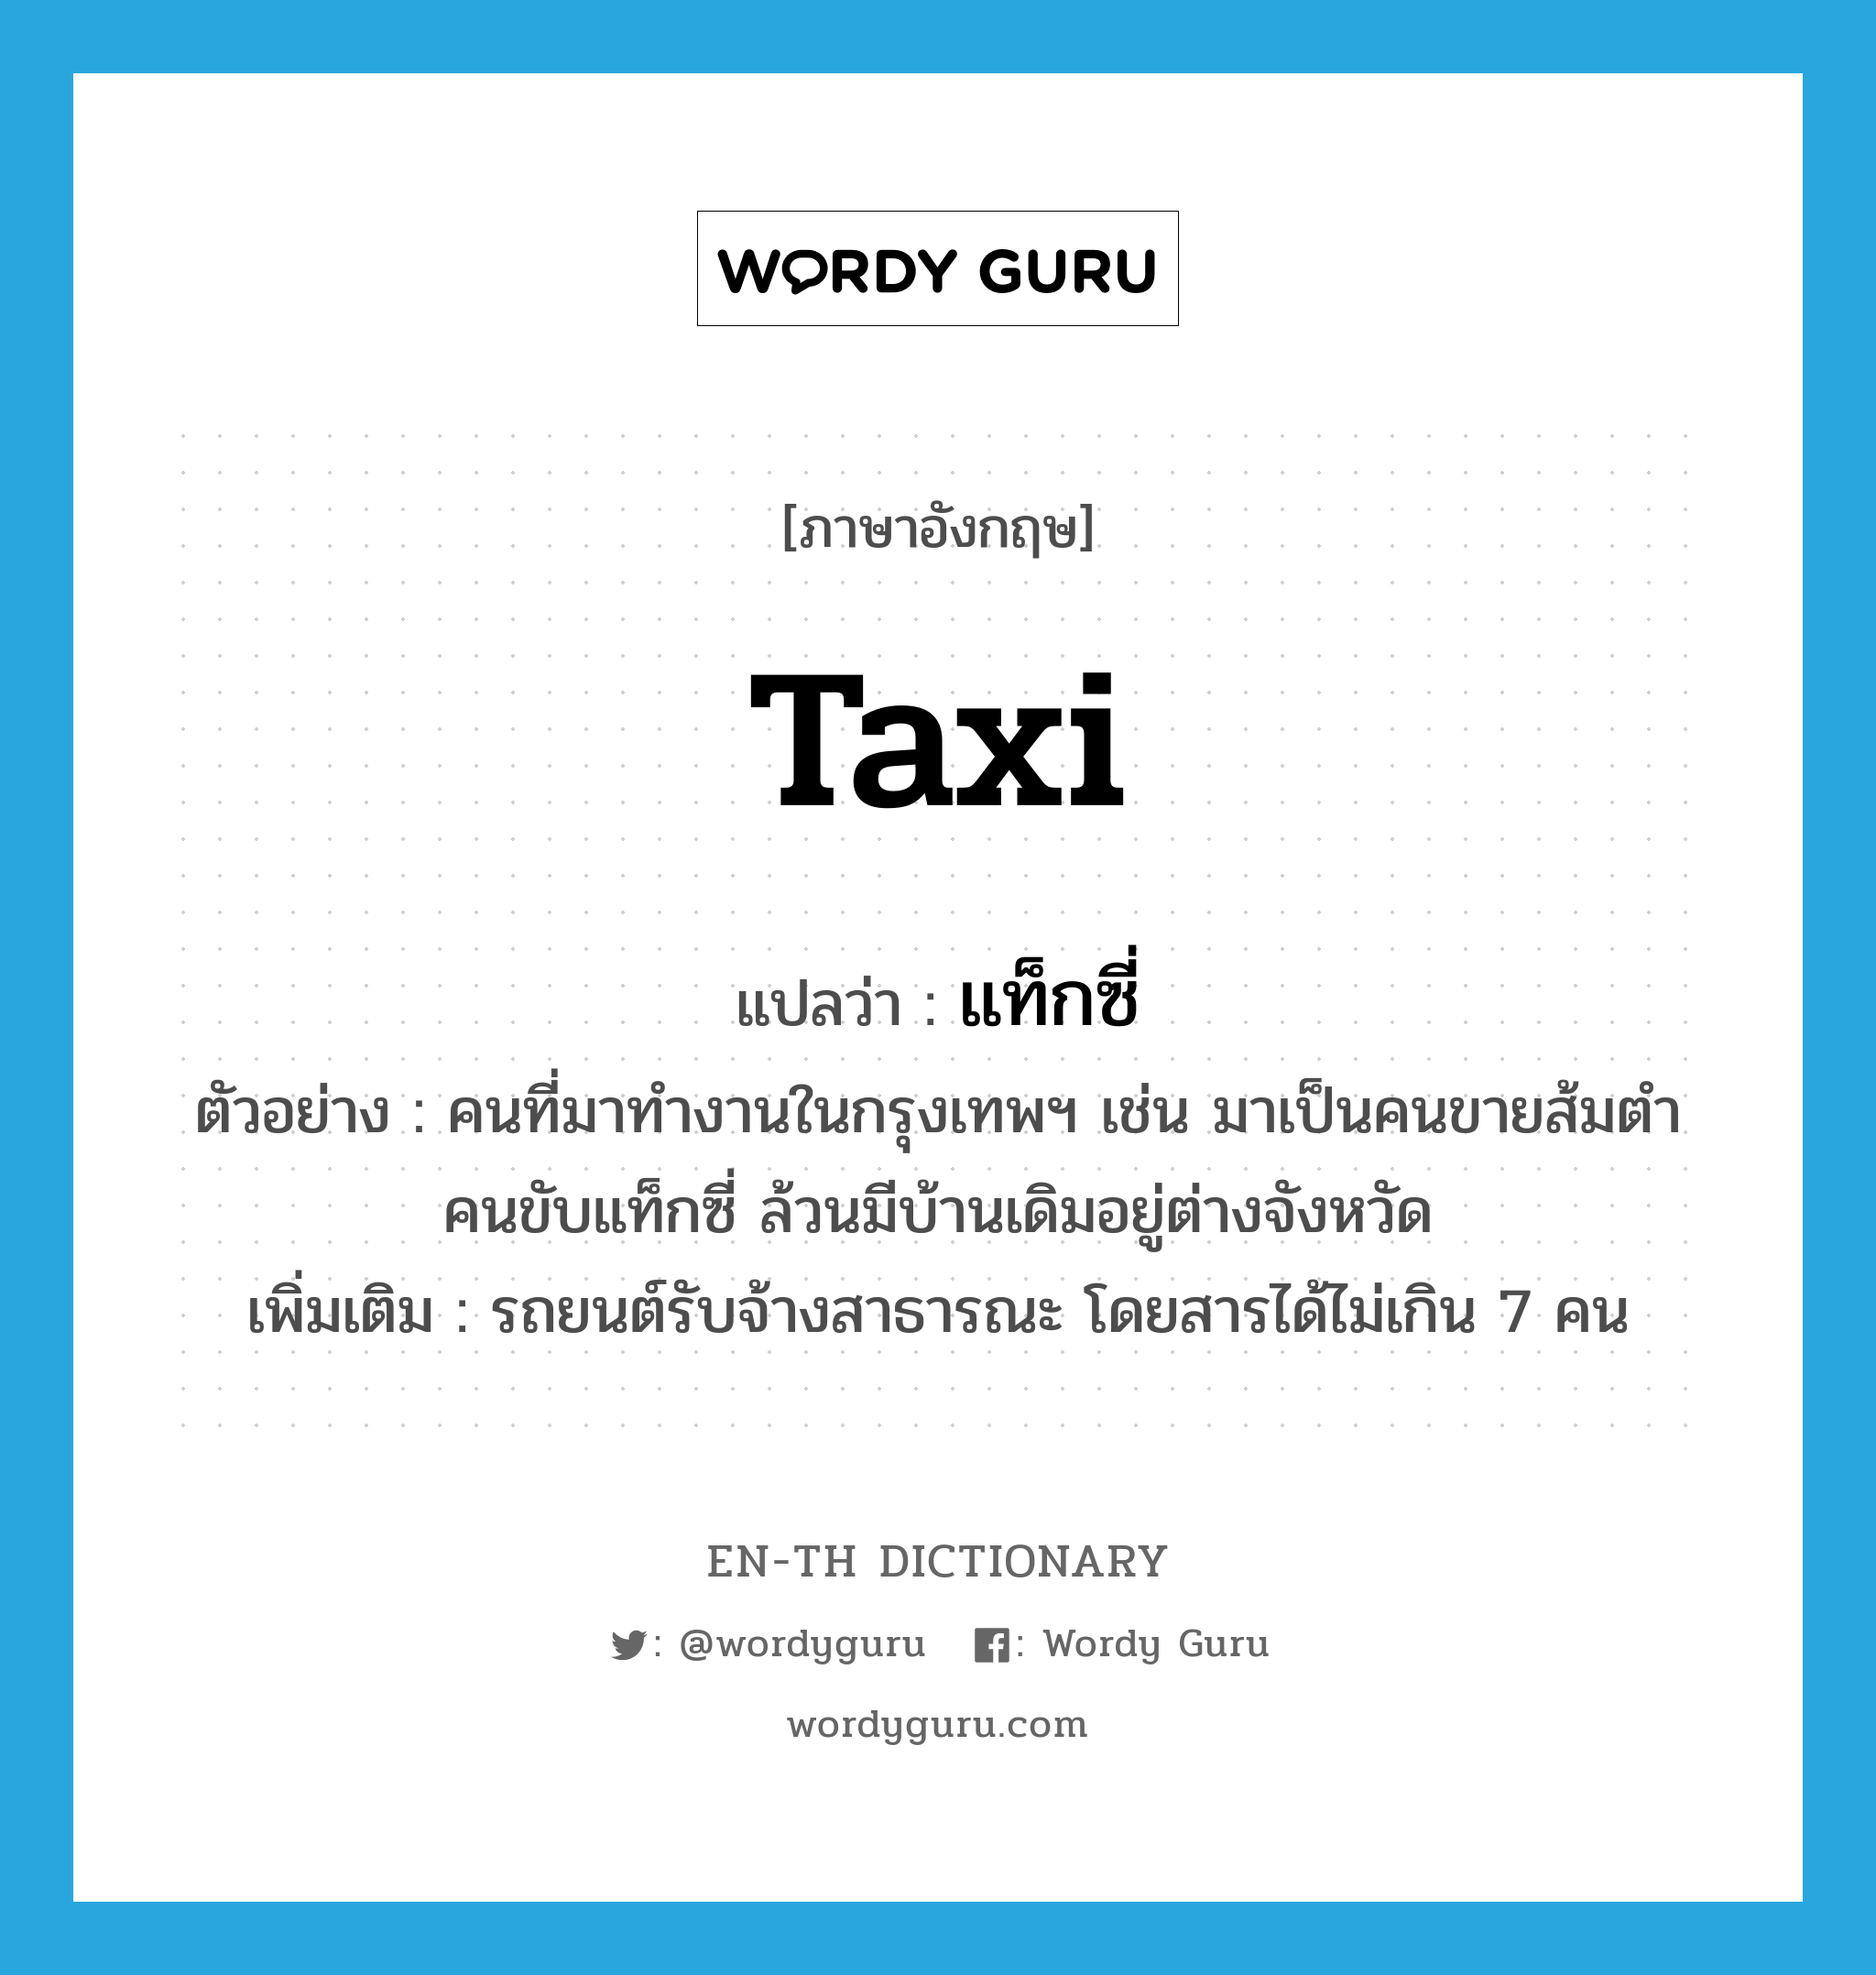 taxi แปลว่า?, คำศัพท์ภาษาอังกฤษ taxi แปลว่า แท็กซี่ ประเภท N ตัวอย่าง คนที่มาทำงานในกรุงเทพฯ เช่น มาเป็นคนขายส้มตำ คนขับแท็กซี่ ล้วนมีบ้านเดิมอยู่ต่างจังหวัด เพิ่มเติม รถยนต์รับจ้างสาธารณะ โดยสารได้ไม่เกิน 7 คน หมวด N